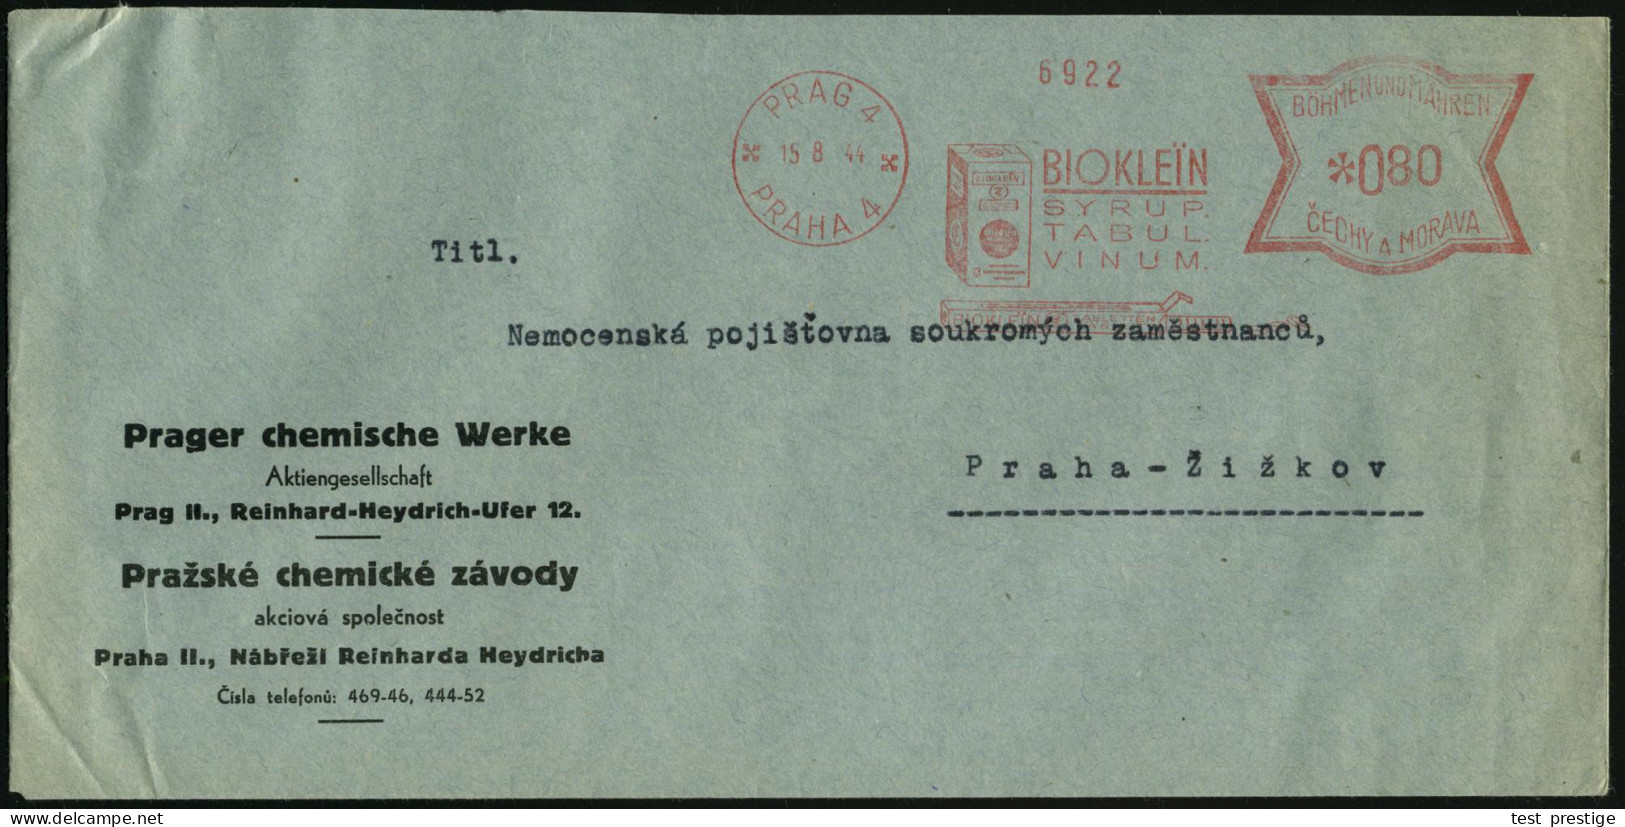 BÖHMEN & MÄHREN 1944 (15.8.) AFS Francotyp: PRAG 4/PRAHA 4/BIOKLEIN/SYRUP/TABUL/VINUM.. (Bioklein-Packung) Firmen-Bf.: P - Chimie